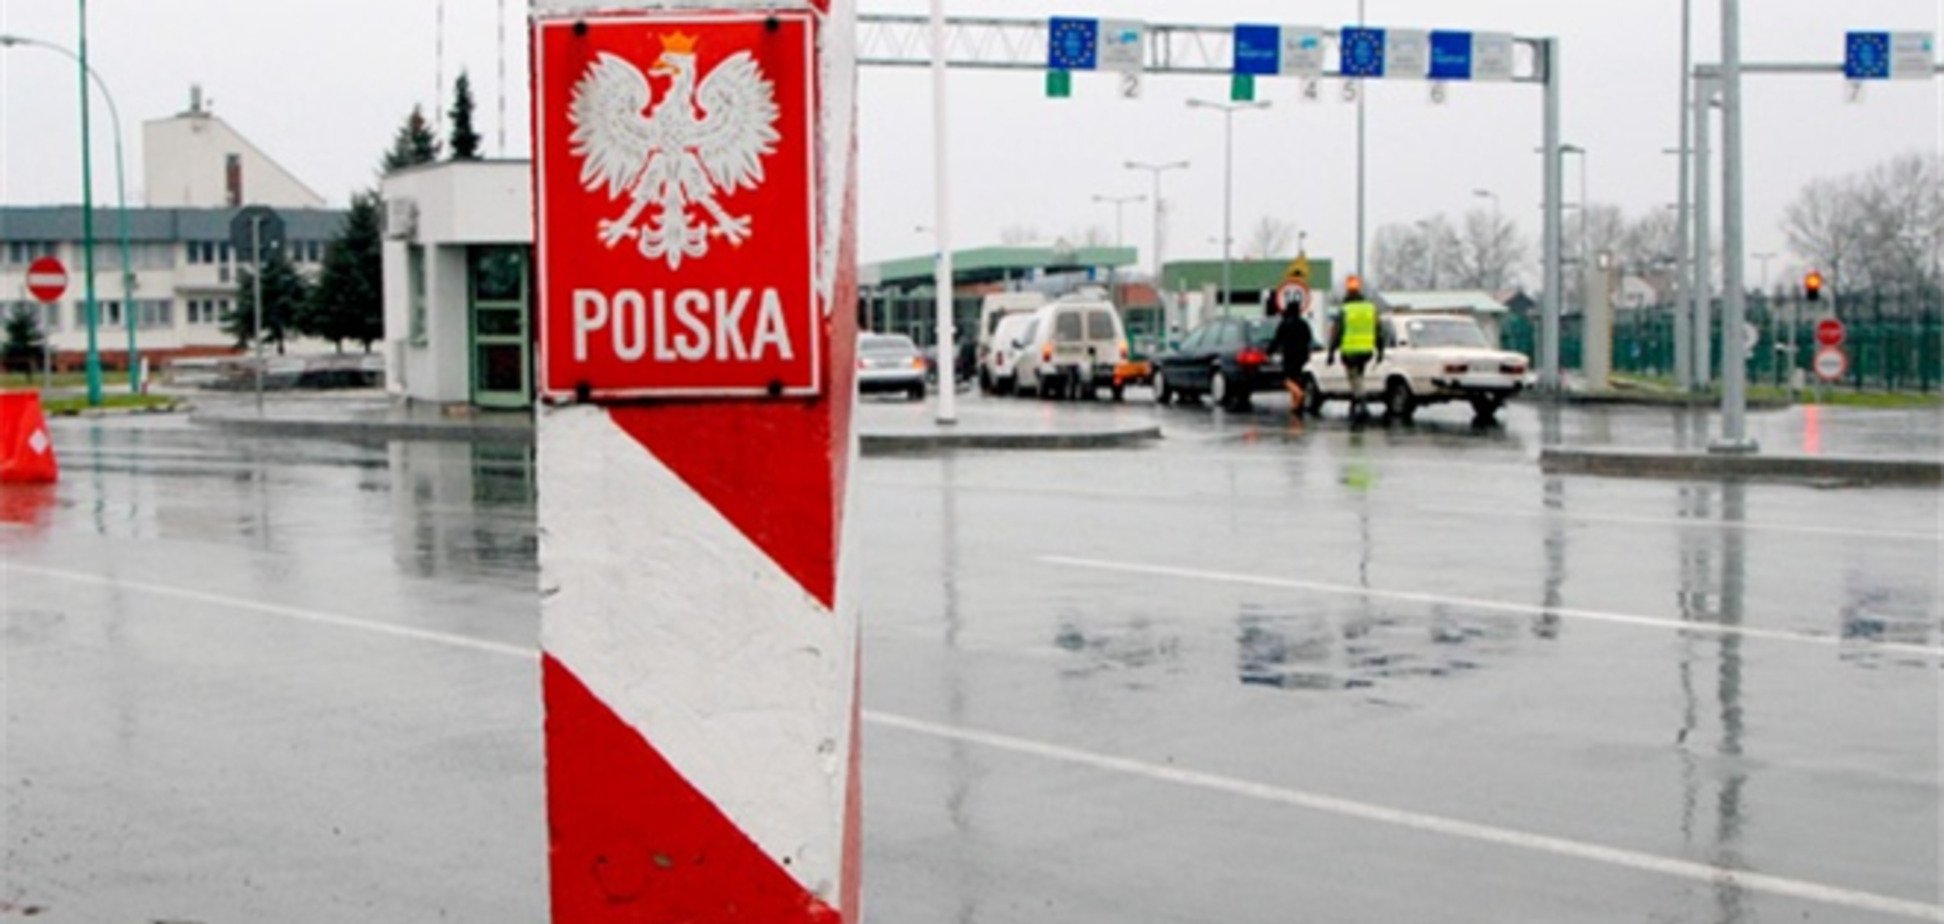 Украинец сшиб шлагбаум, пытаясь прорваться в Польшу с контрабандой